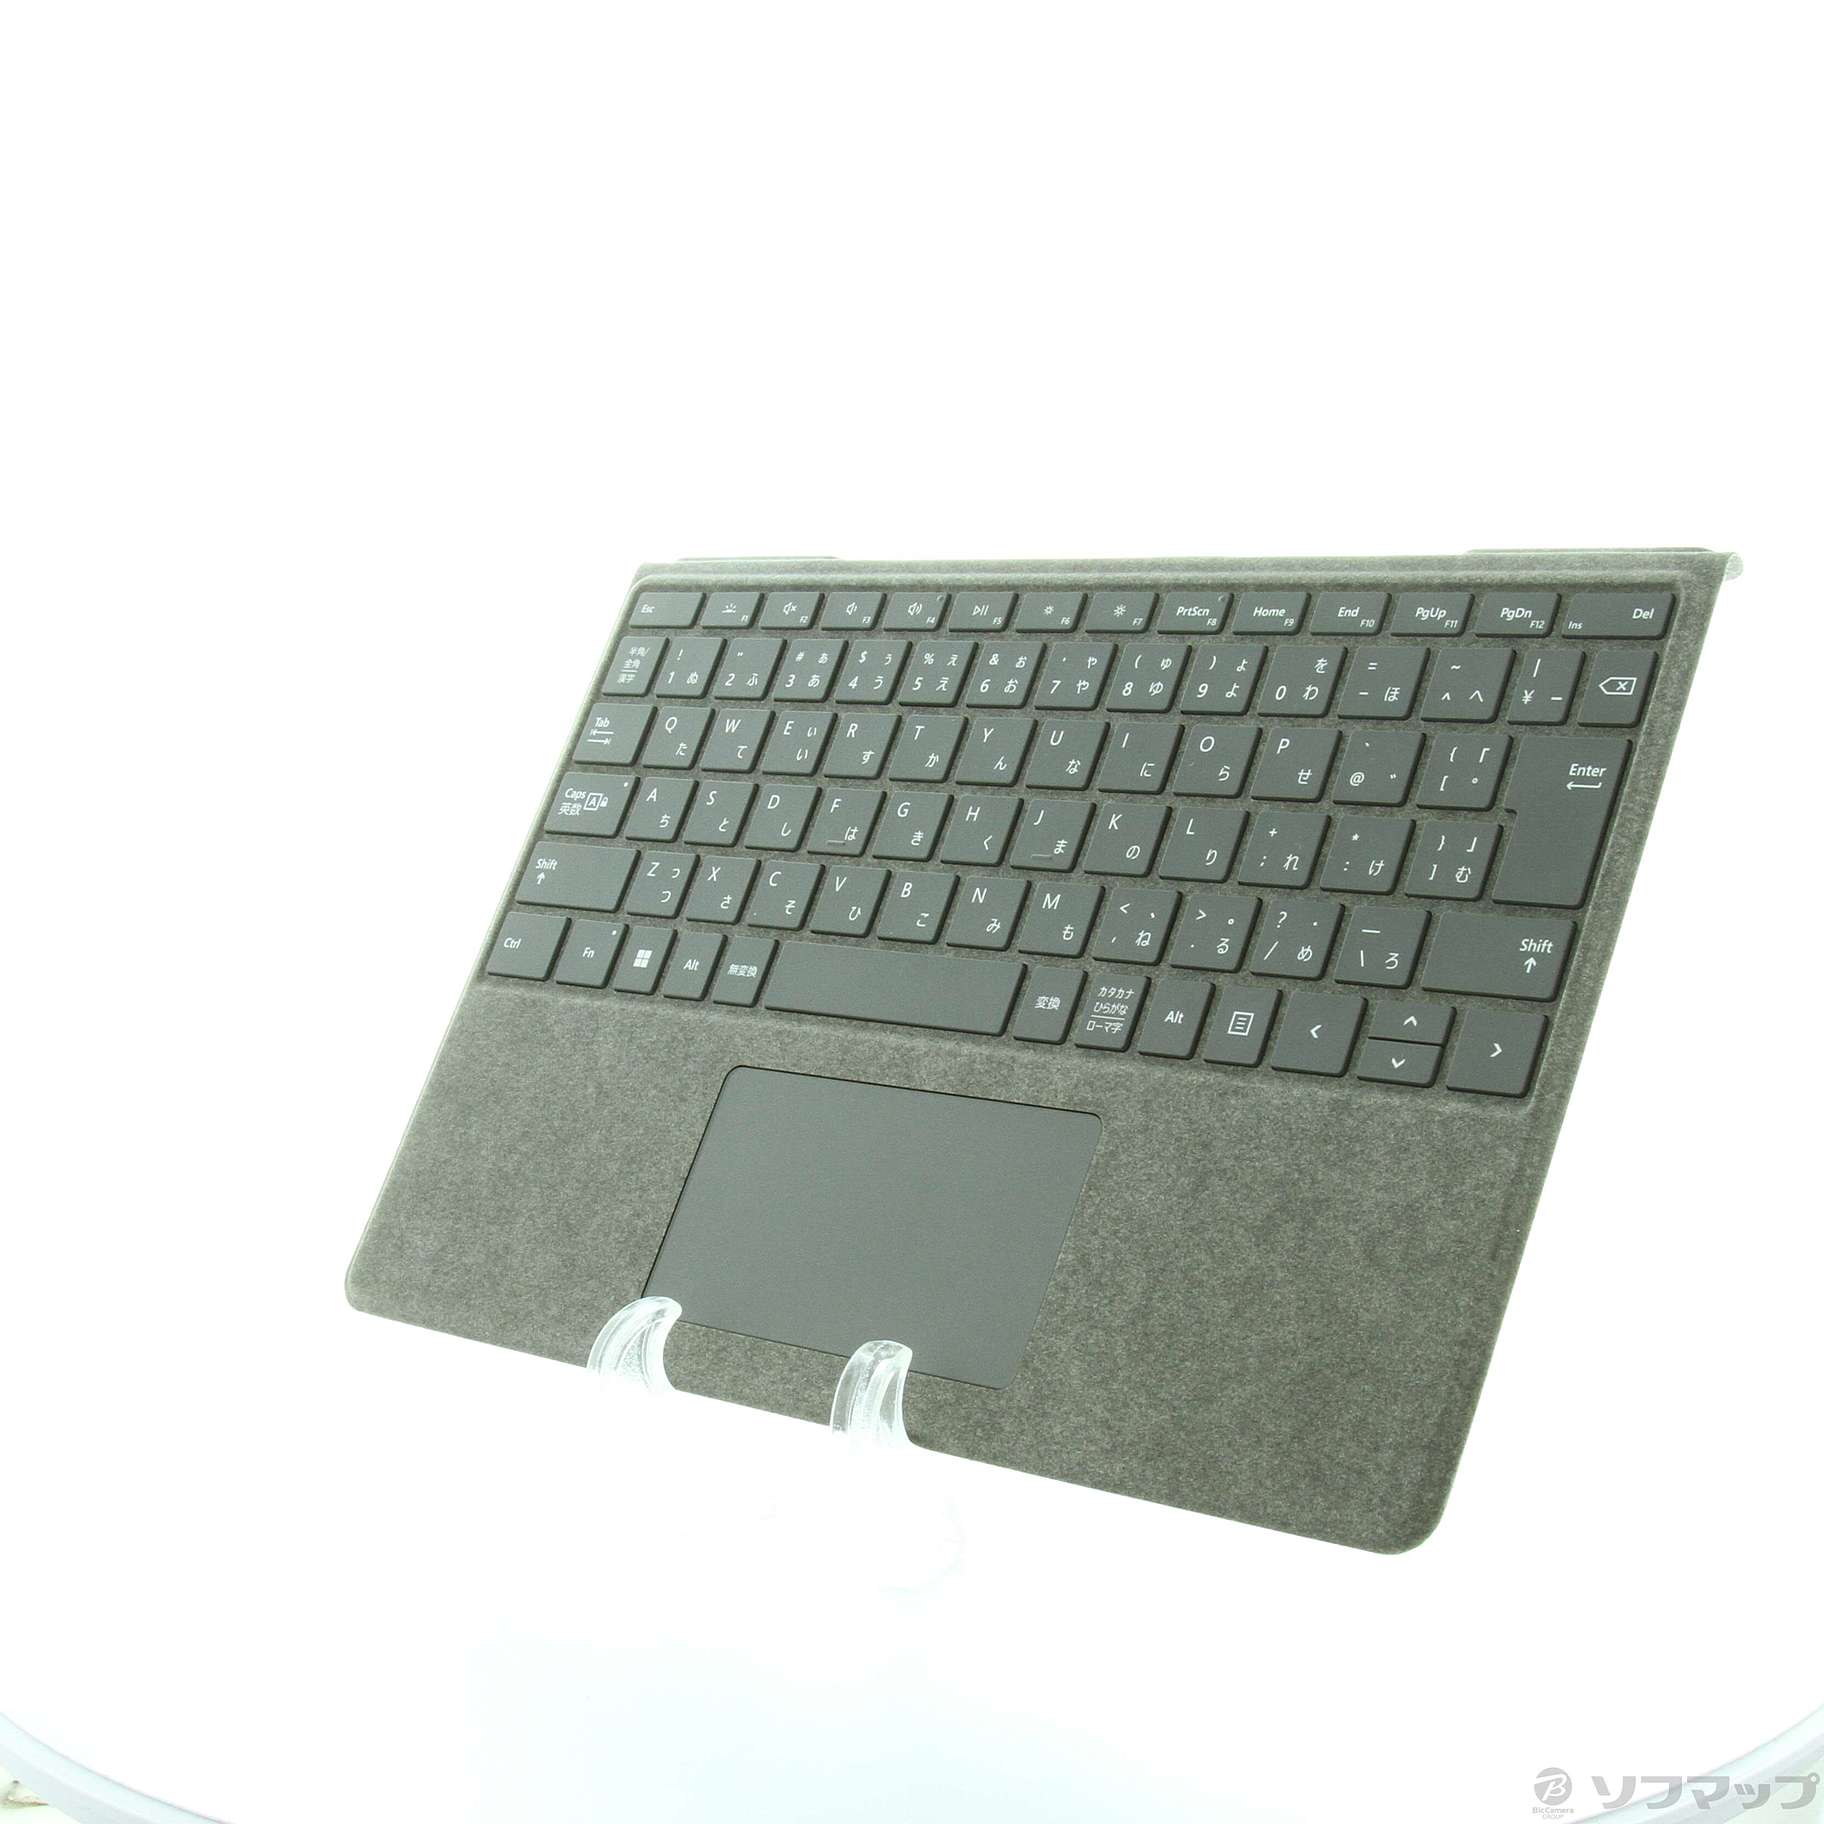 〔展示品〕 Surface Pro Signature キーボード プラチナ 8XA-00079